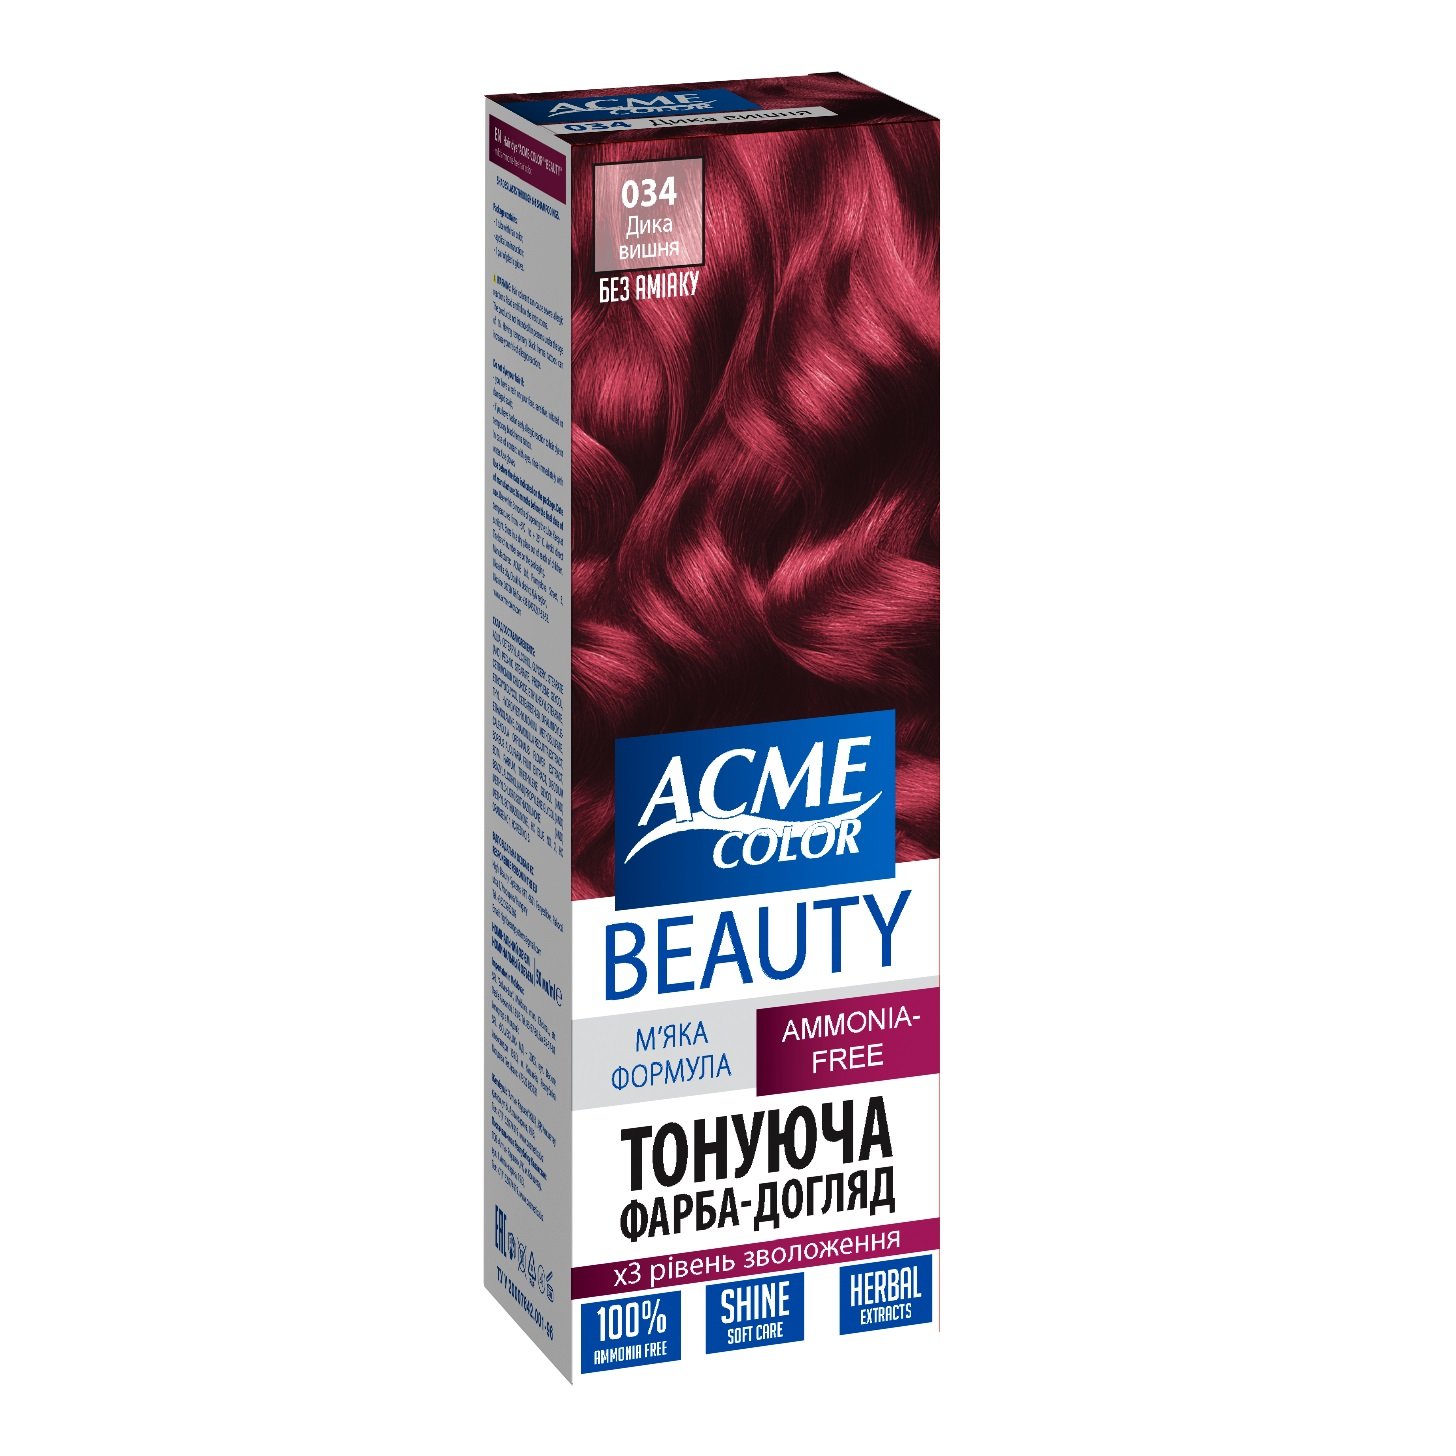 Гель-краска для волос Acme-color Beauty, оттенок 034 (Дикая вишня), 69 г - фото 1